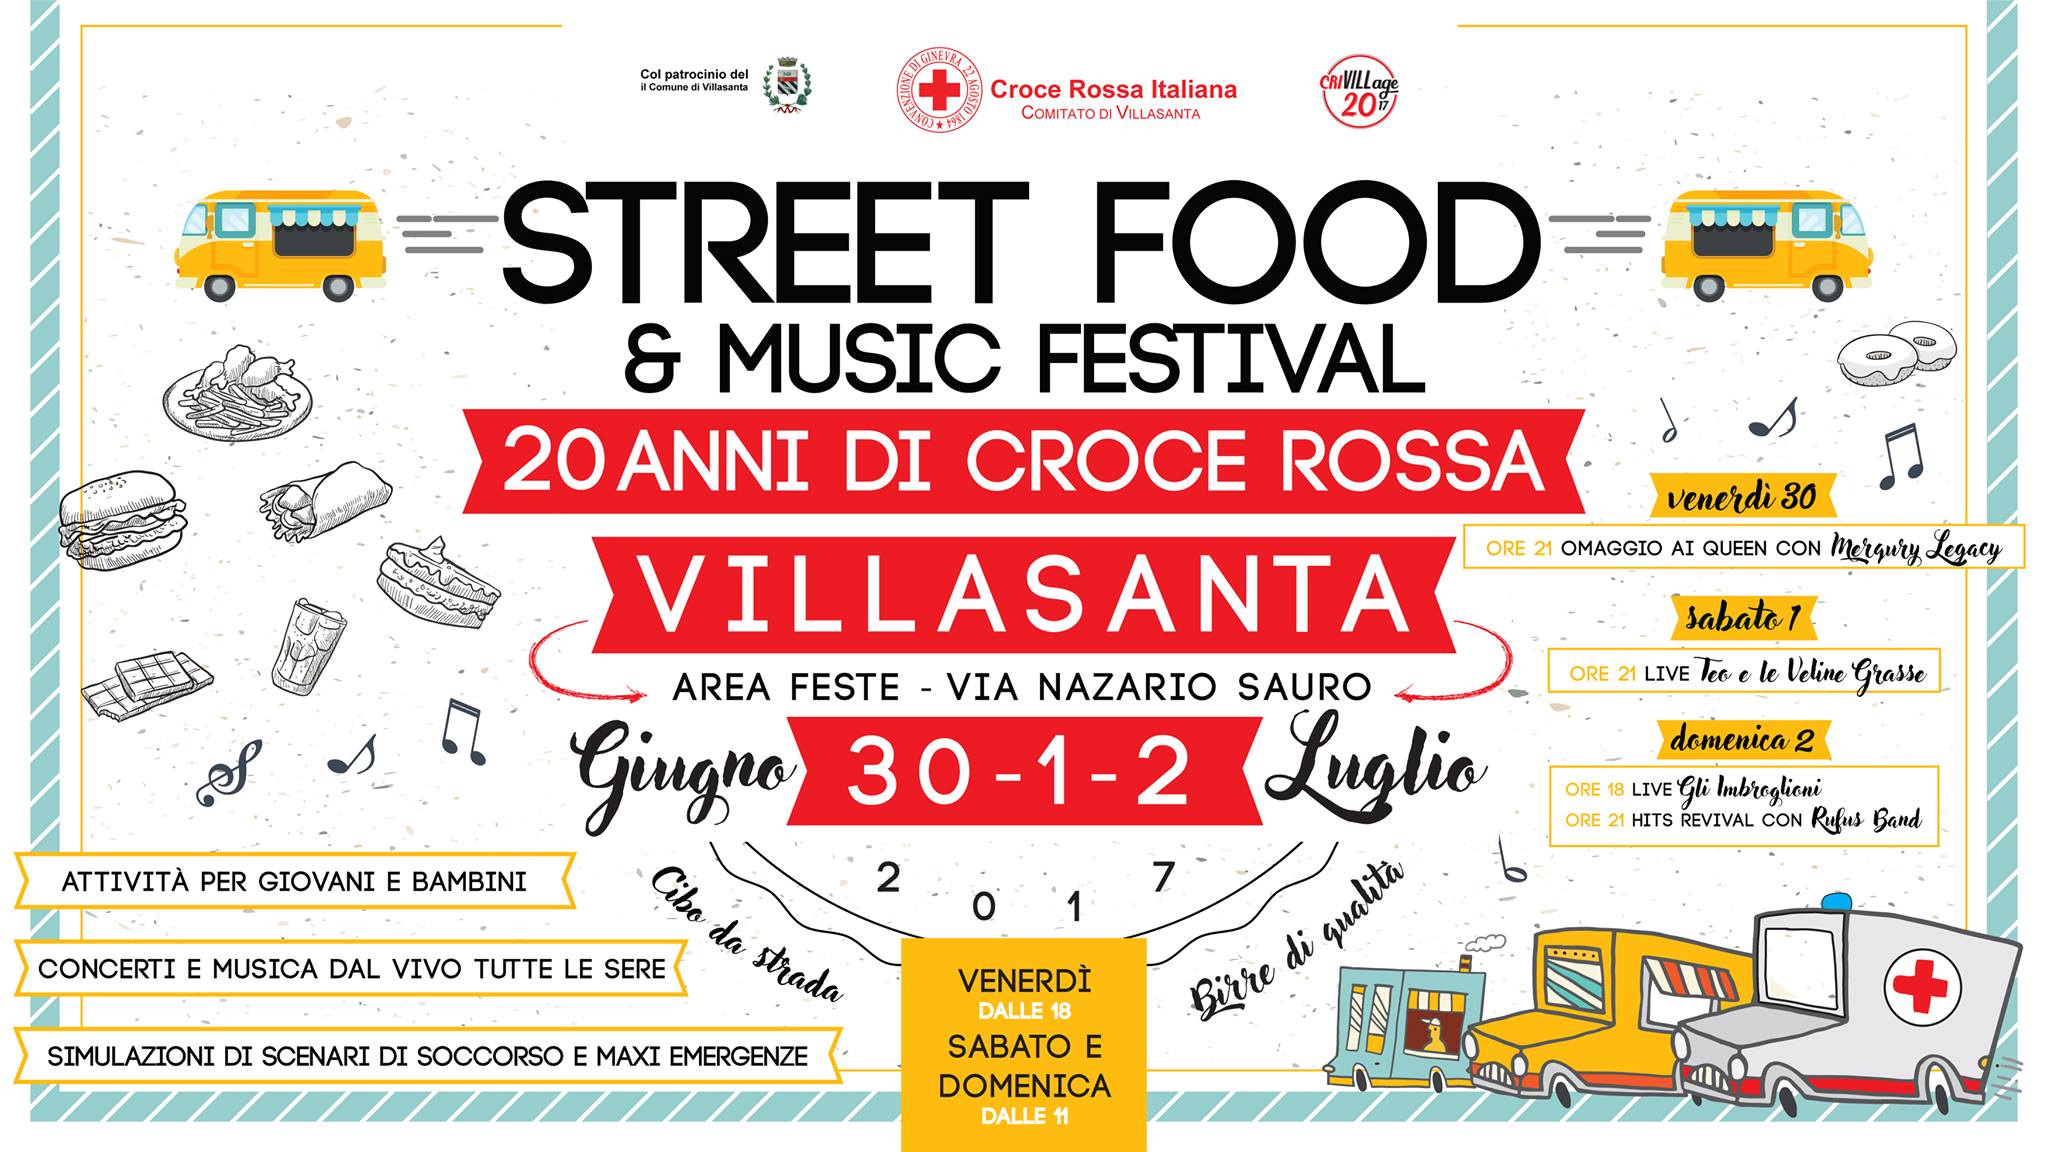 Street Food & Music Festival - Villasanta